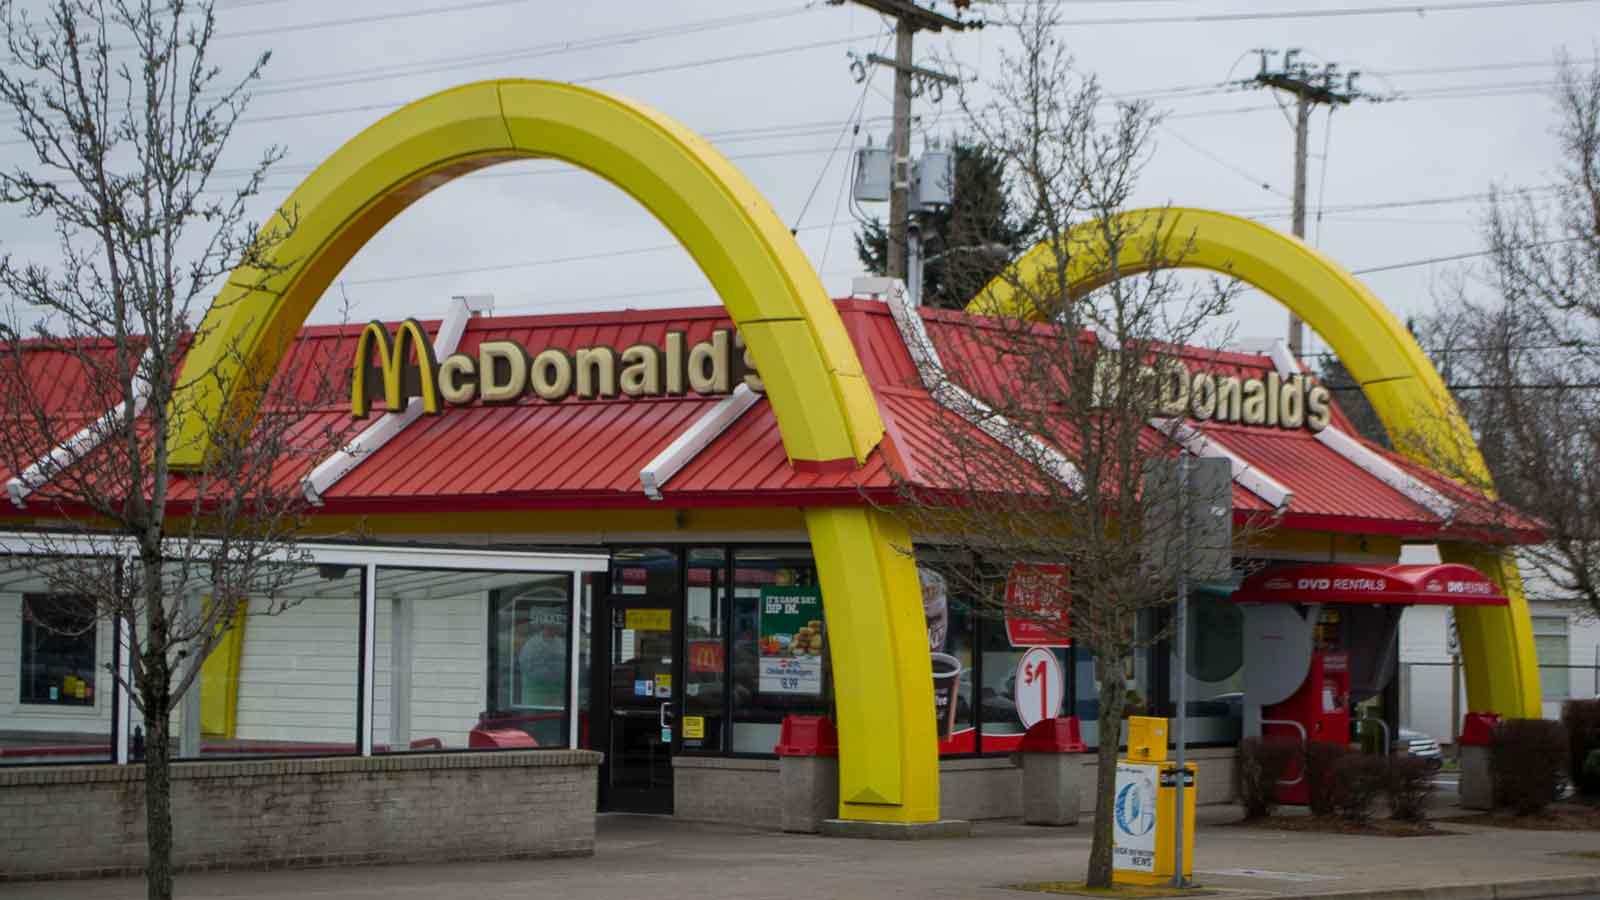 McDonald's restaurant exterior